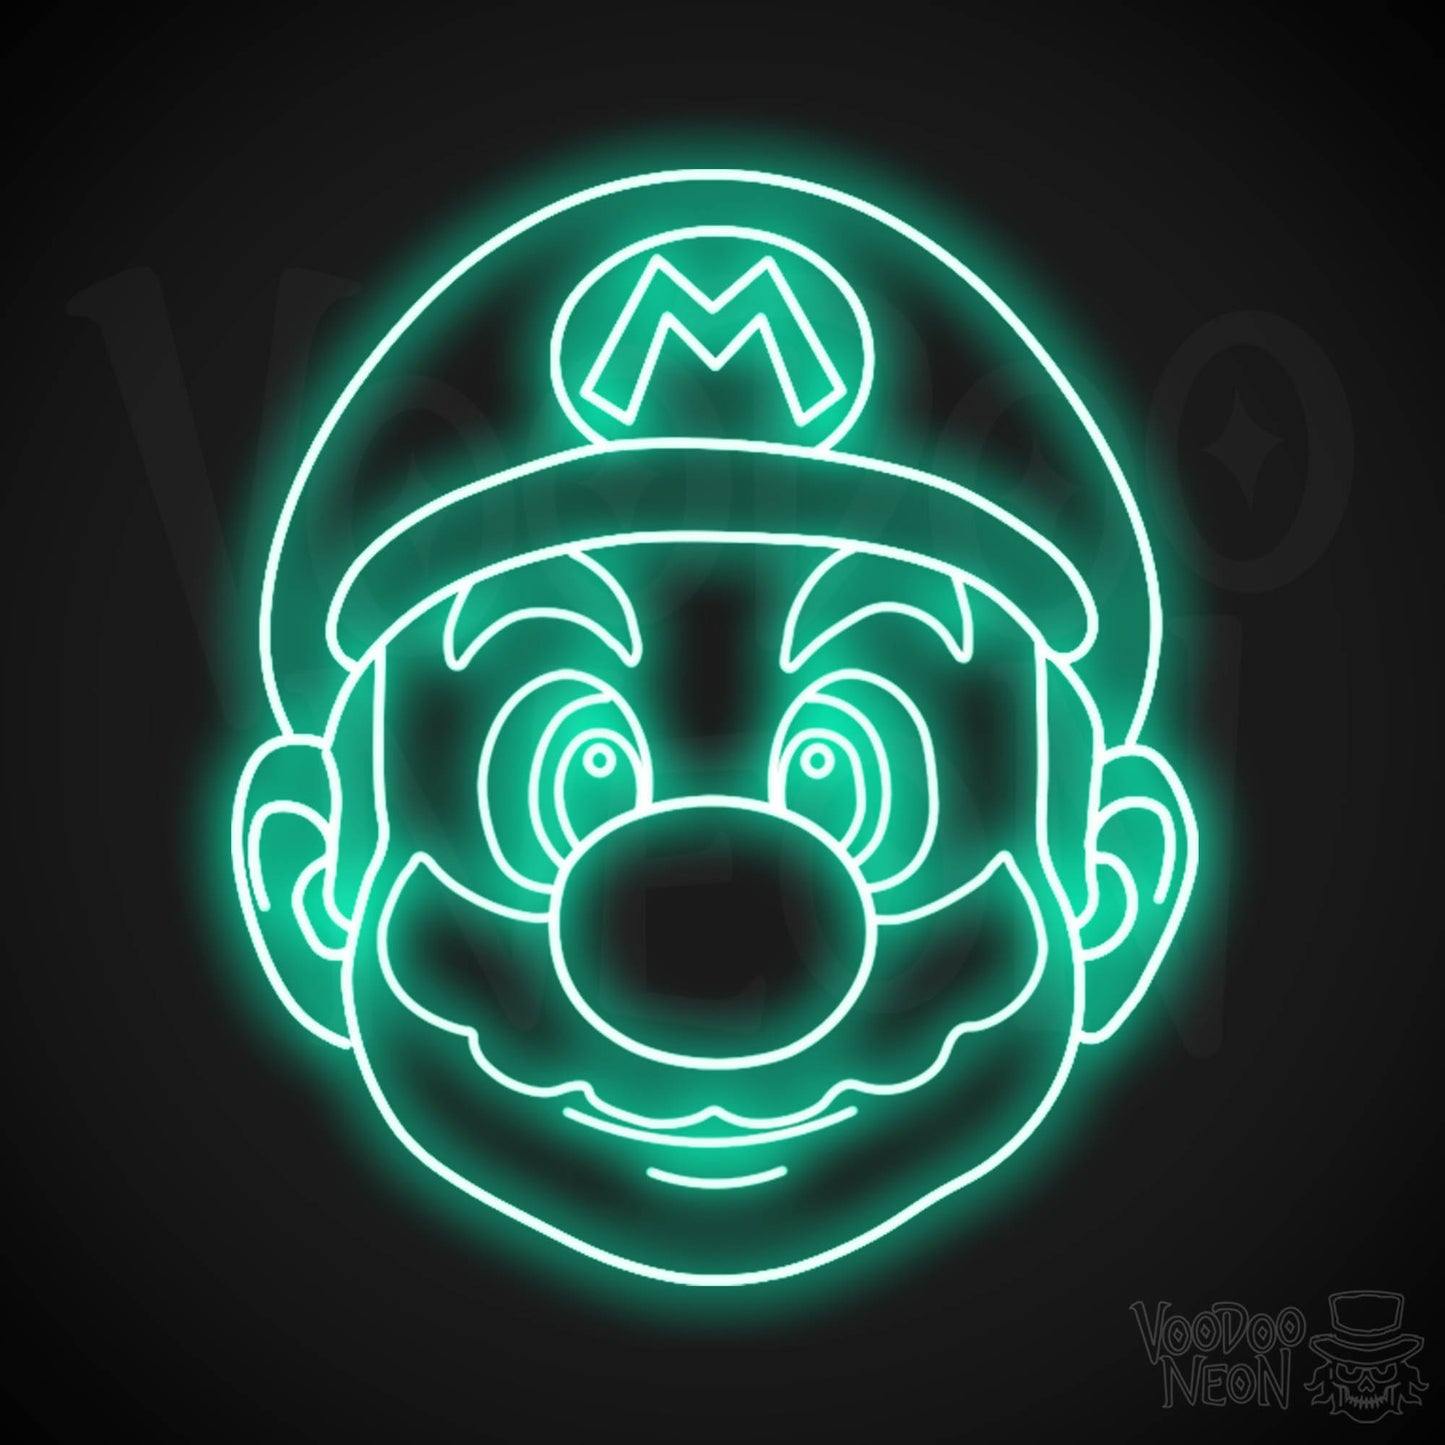 Mario Neon Sign - Mario Sign - Mario Wall Art - LED Neon Wall Art - Color Light Green